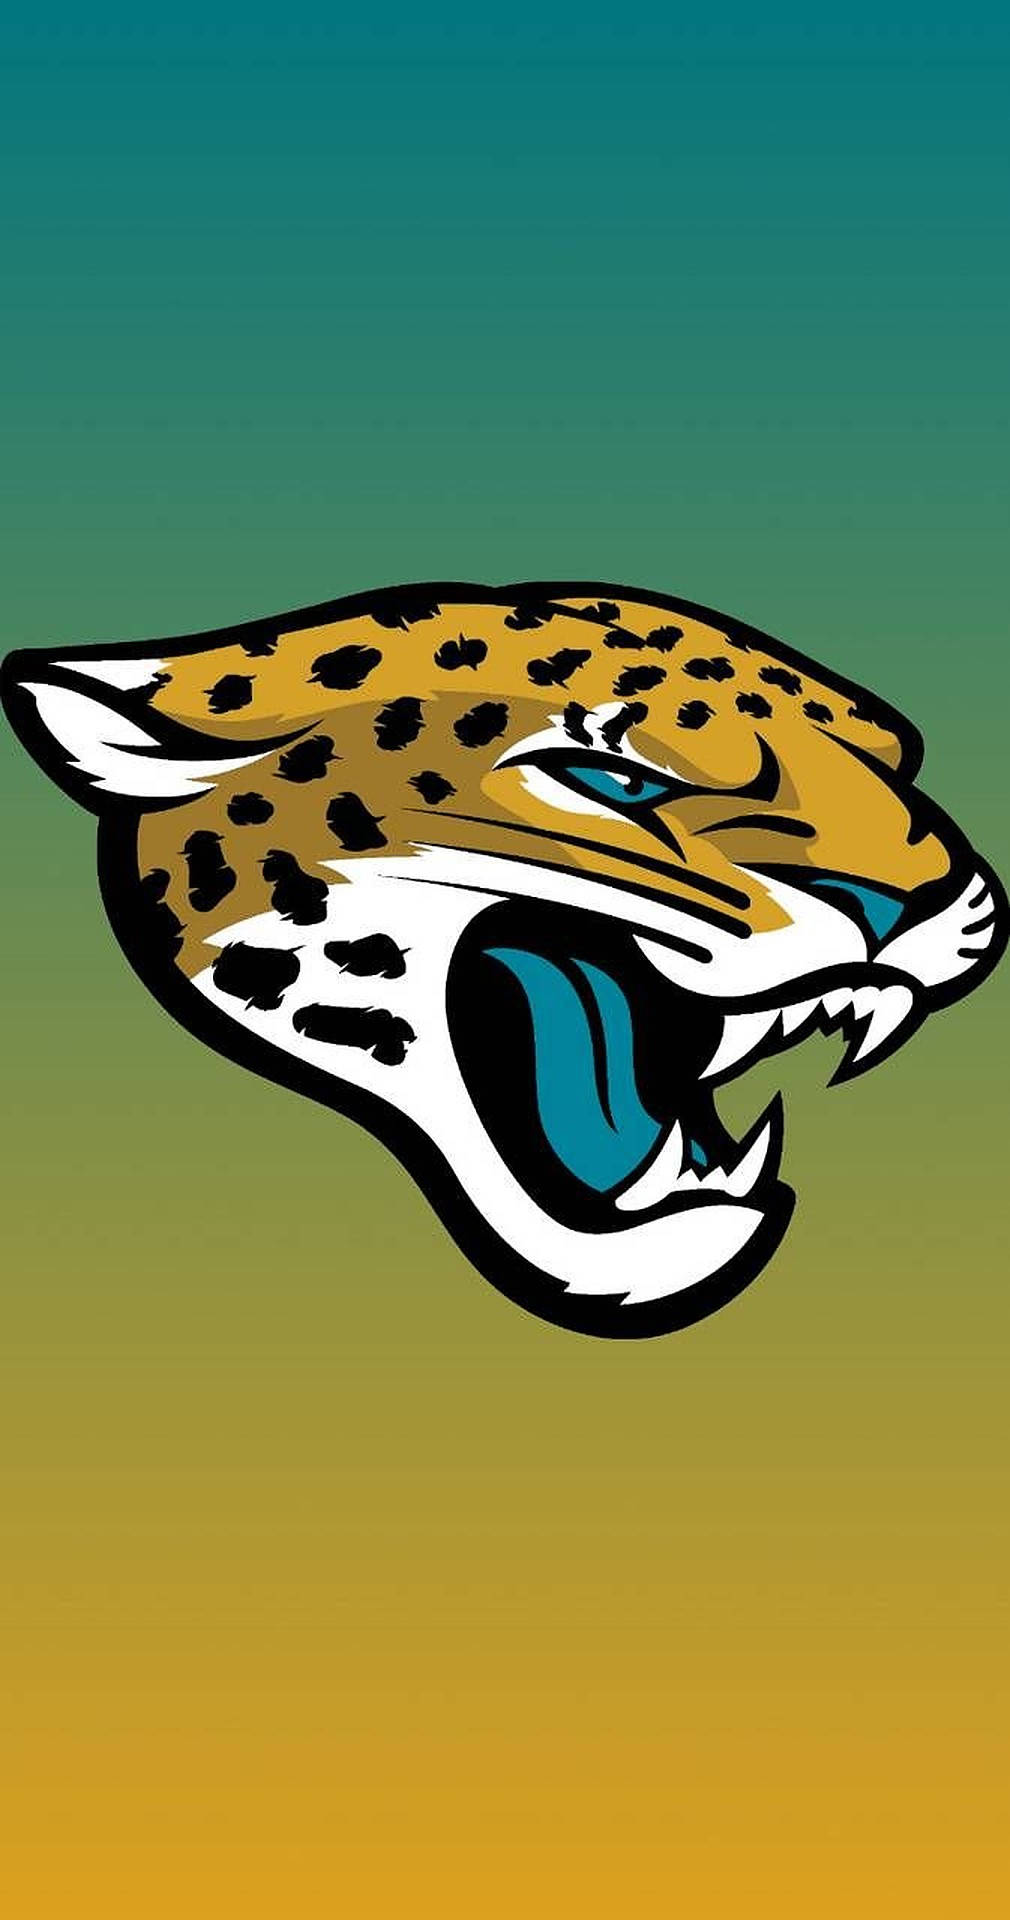 Jacksonville Jaguars Emblem Gradient